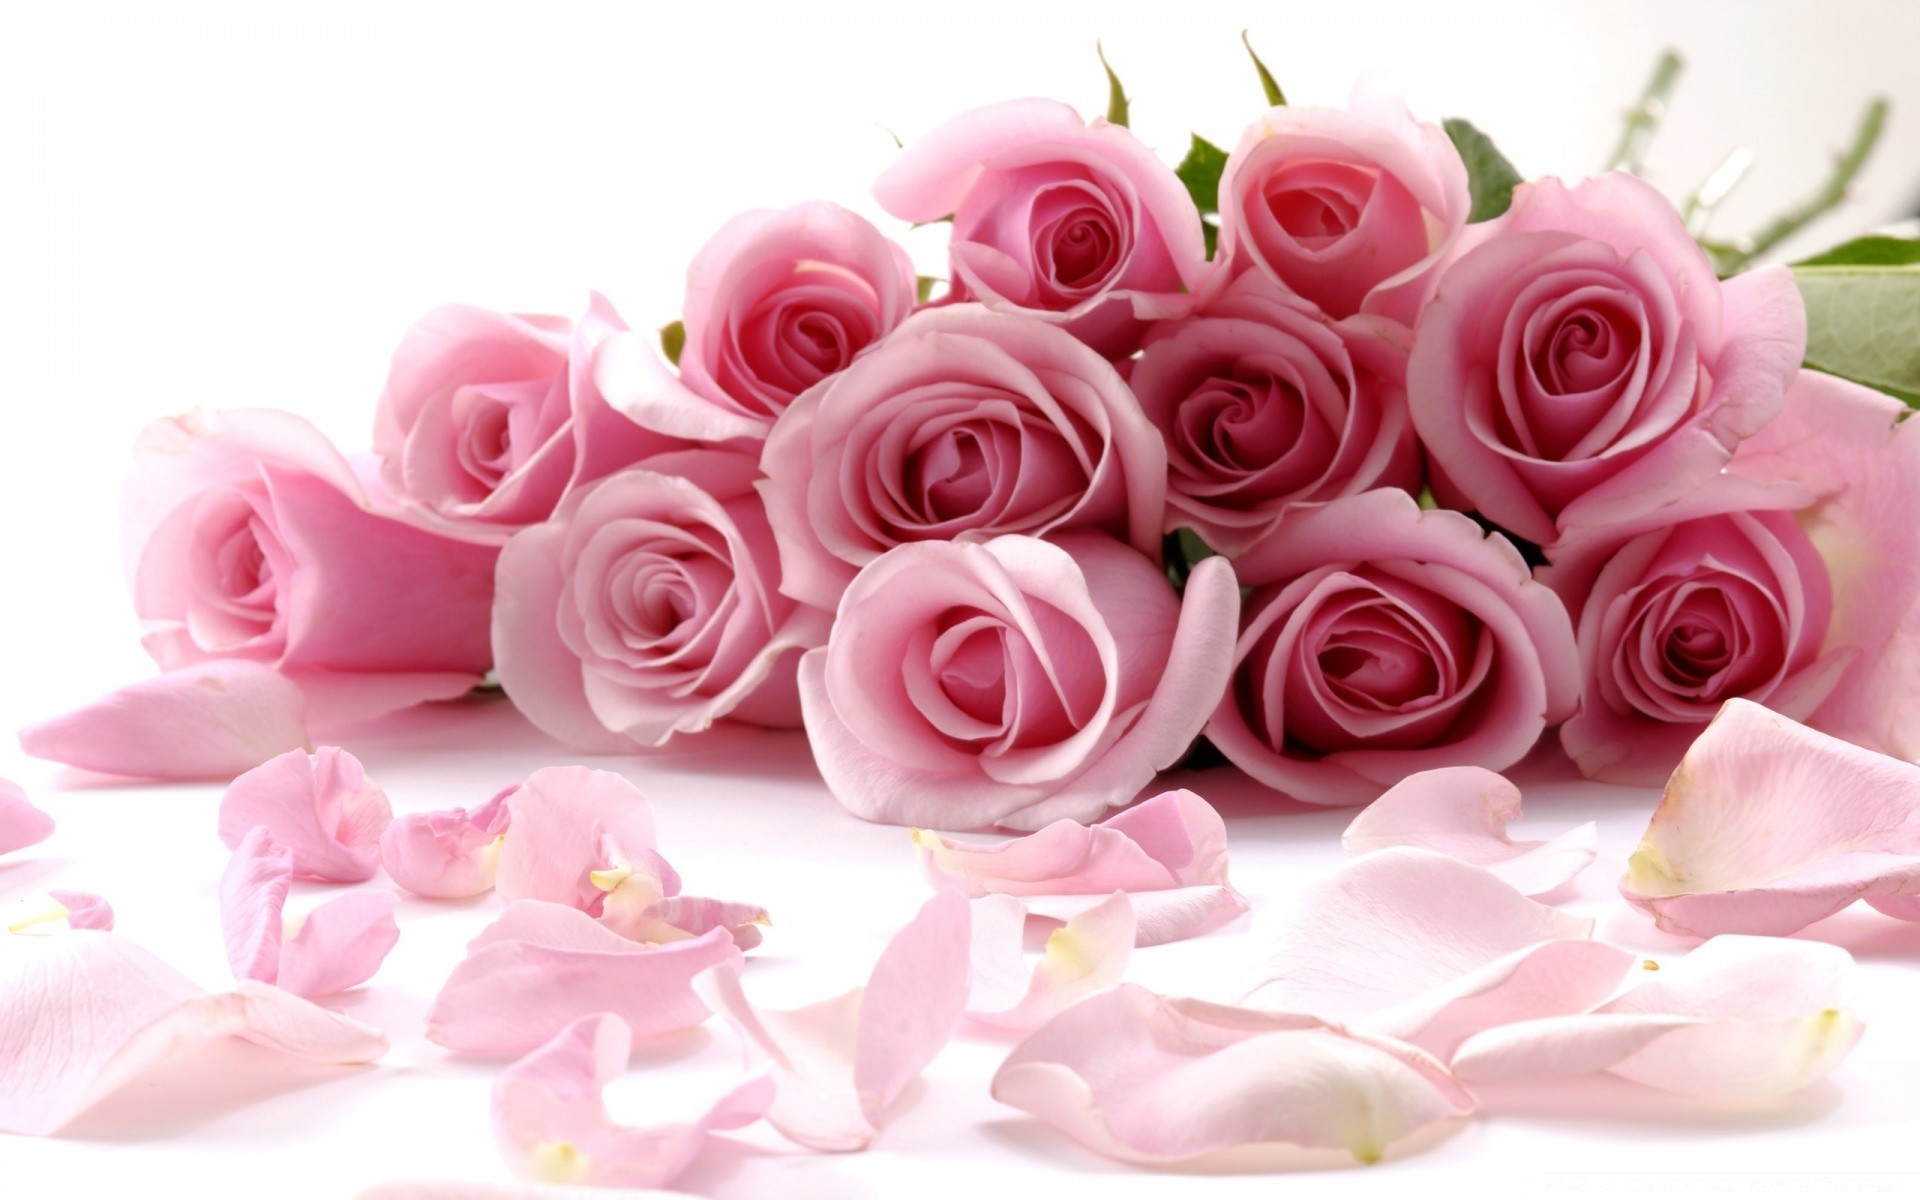 Фото прекрасных розовых роз